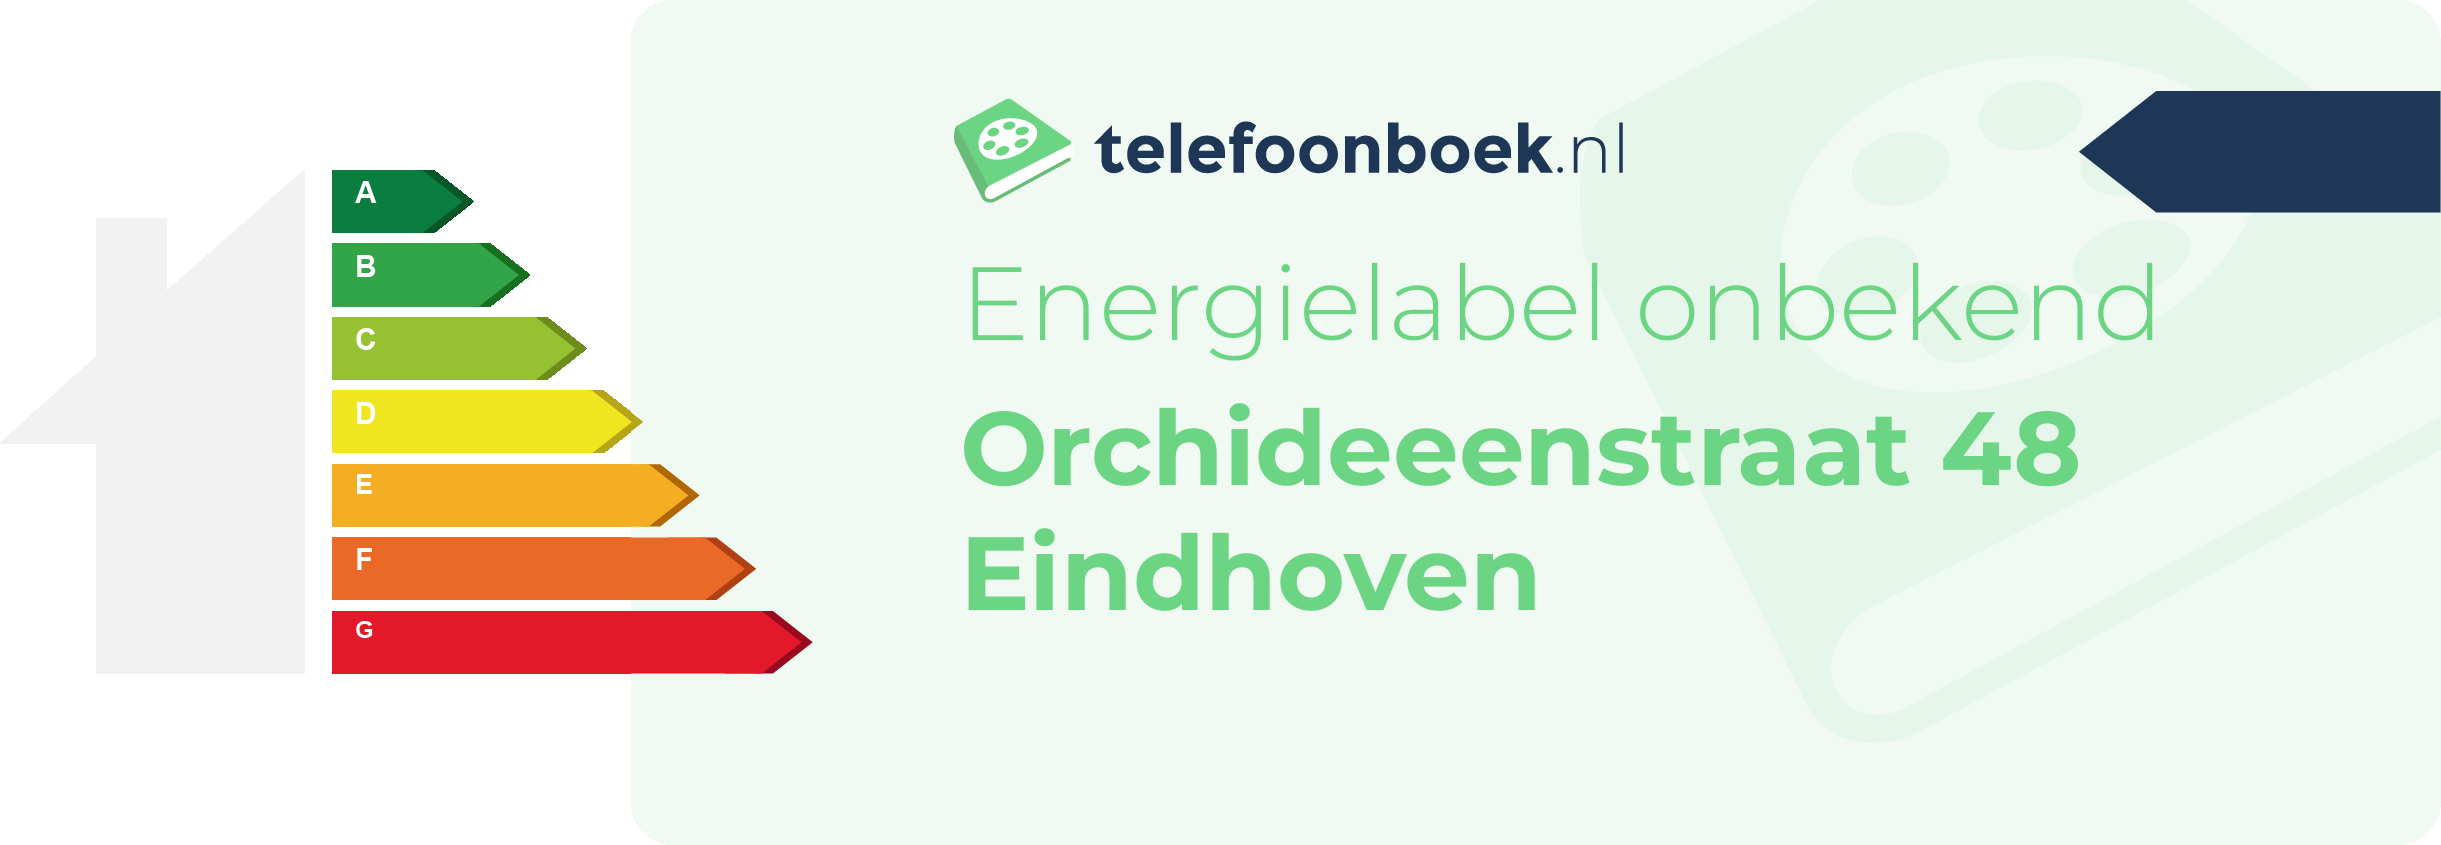 Energielabel Orchideeenstraat 48 Eindhoven